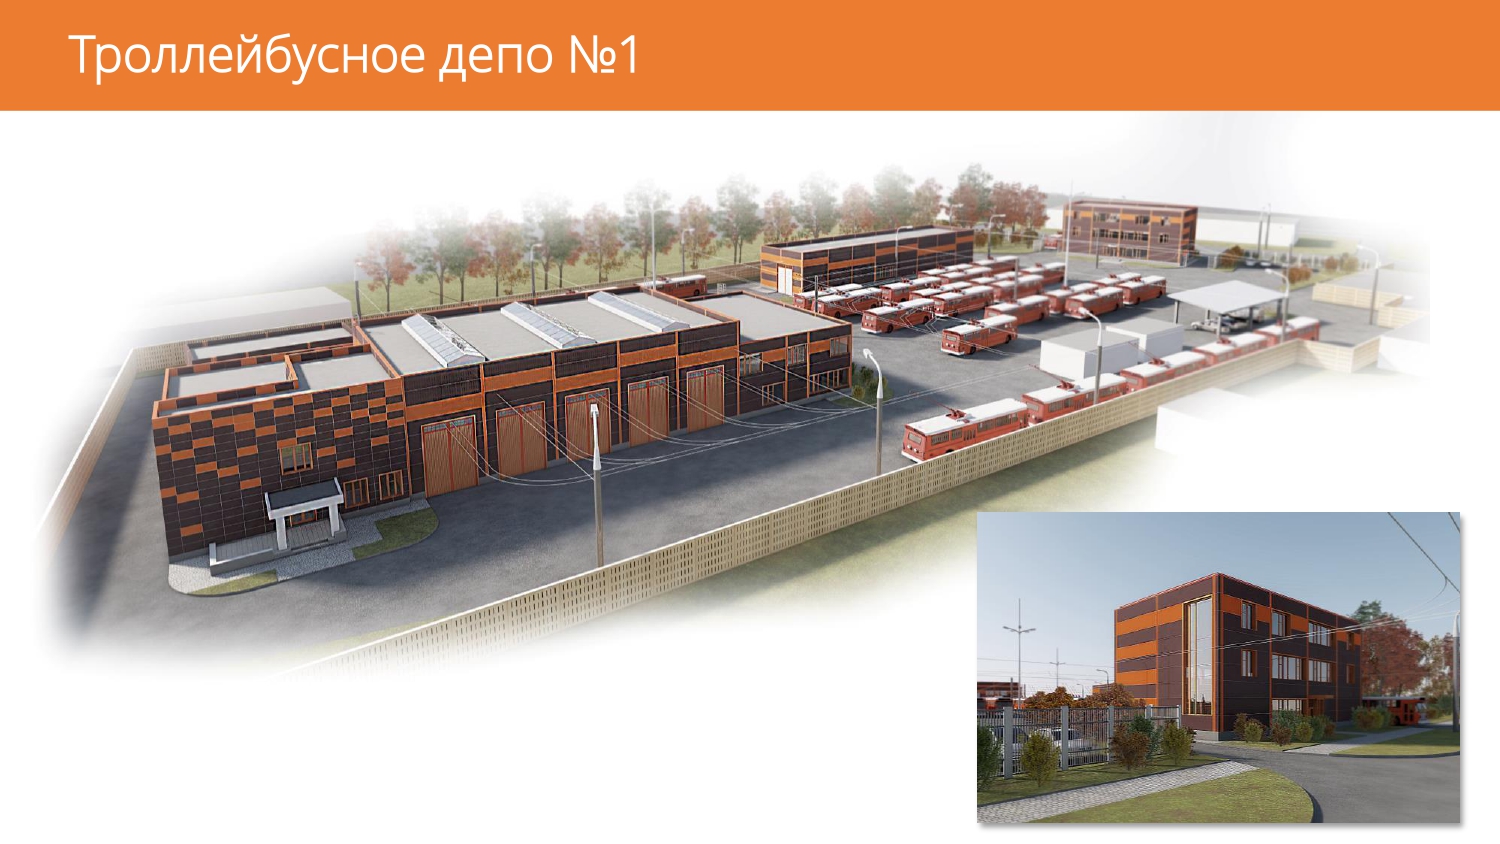 Визуализация будущего челябинского депо №1 (1).jpg